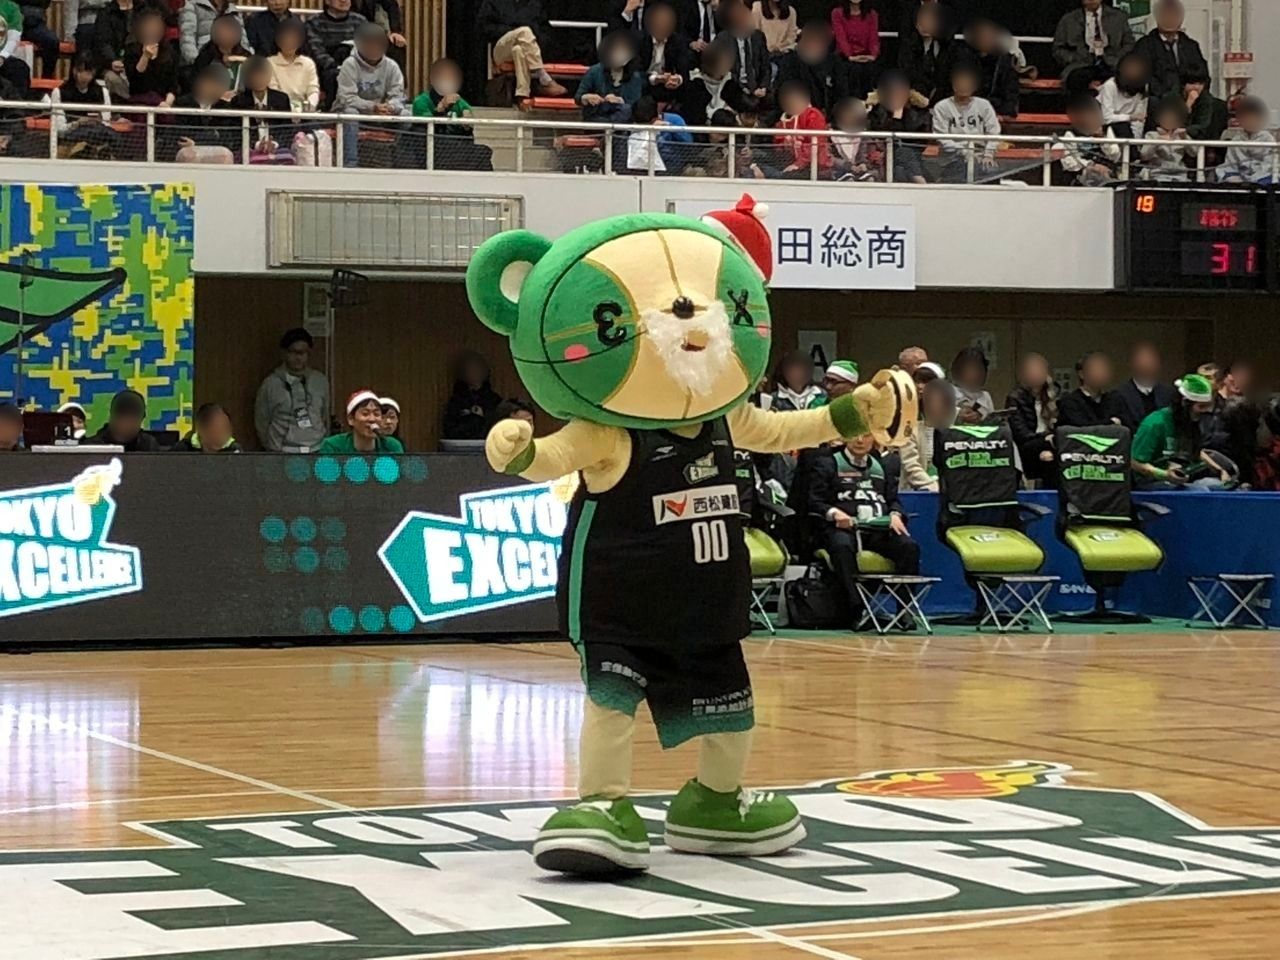 バスケットボールB3リーグ「東京エクセレンス」